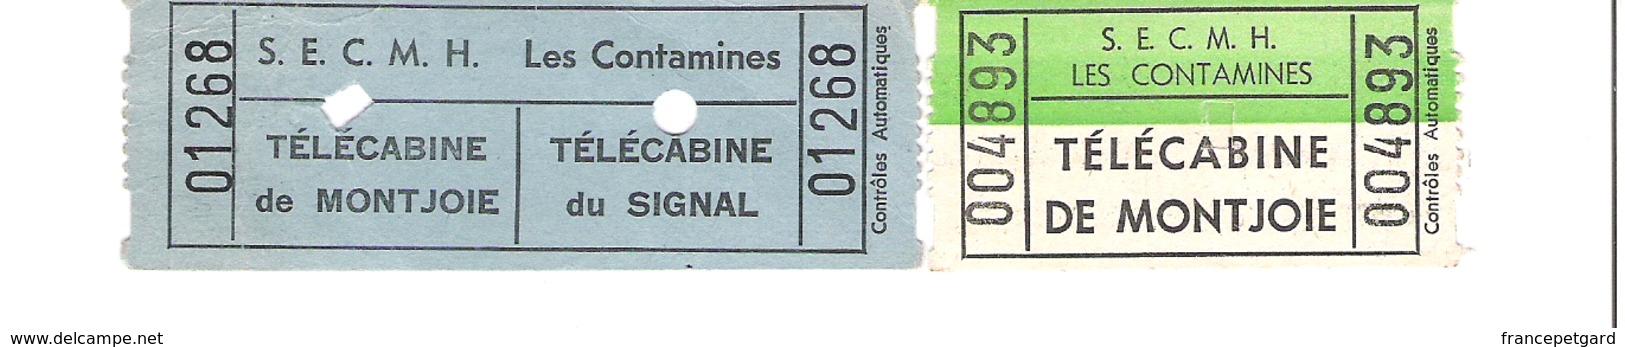 Télécabine Montjoie Les Contamines Lot De 2 Tickets - Tickets - Vouchers